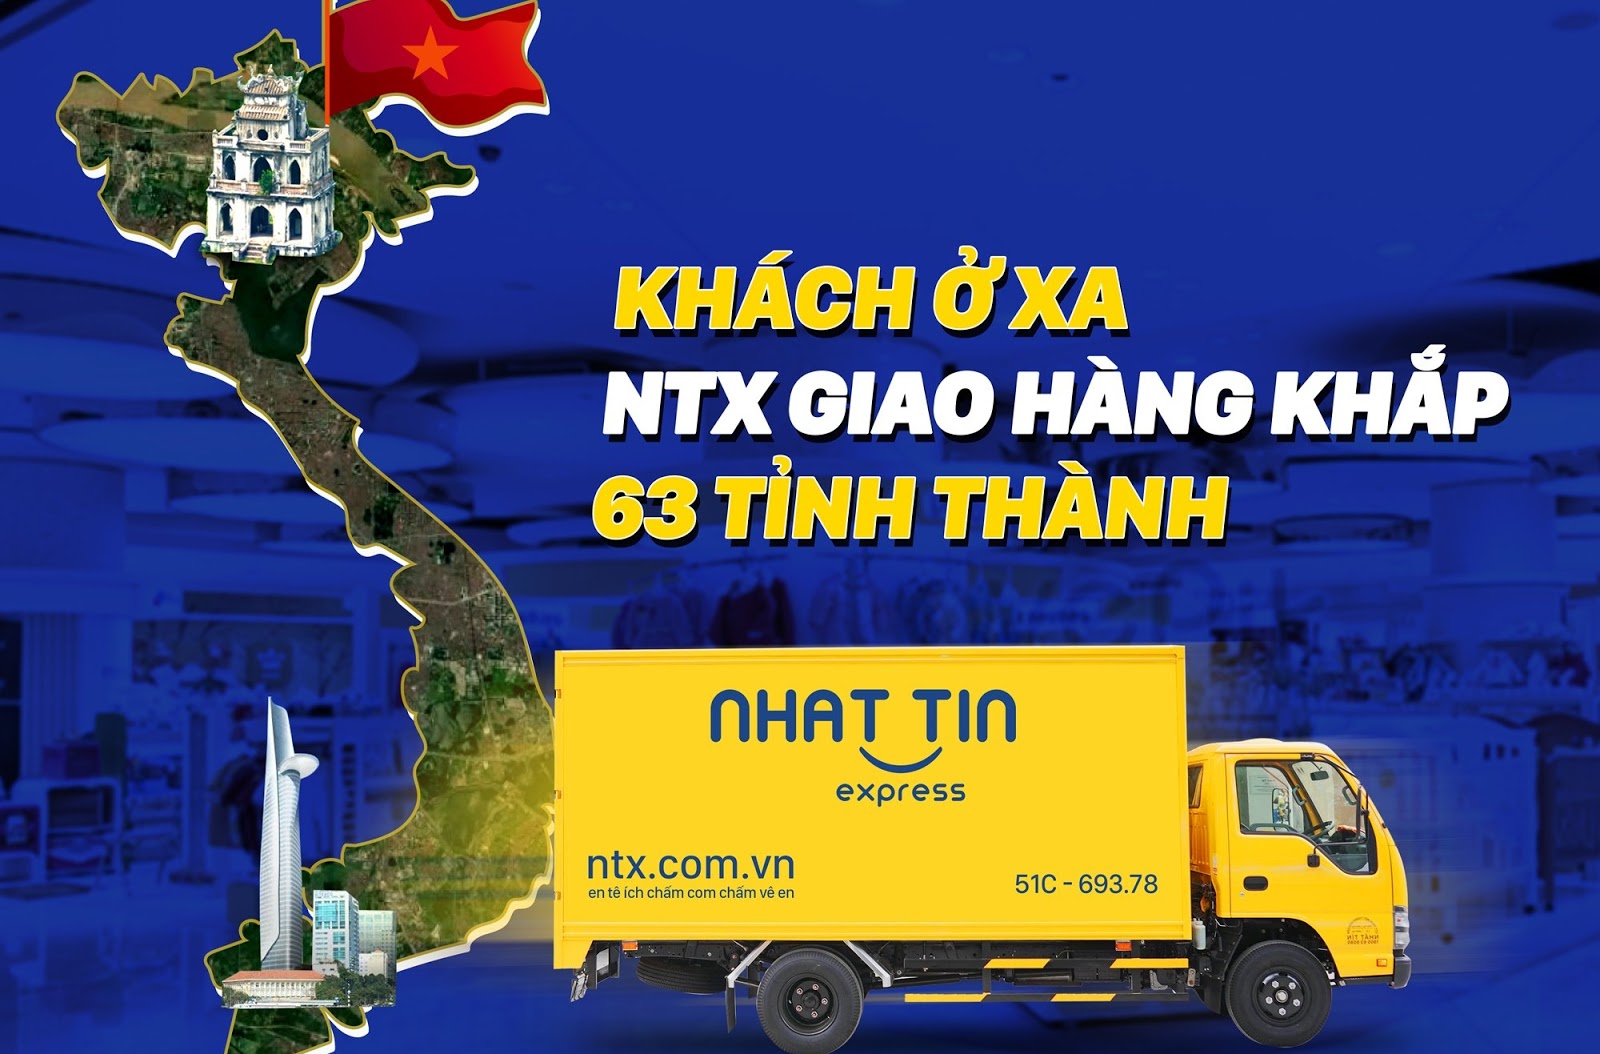 NTX - Nhất Tín Express đơn vị giao hàng nhanh Hà Nội uy tín tận tâm